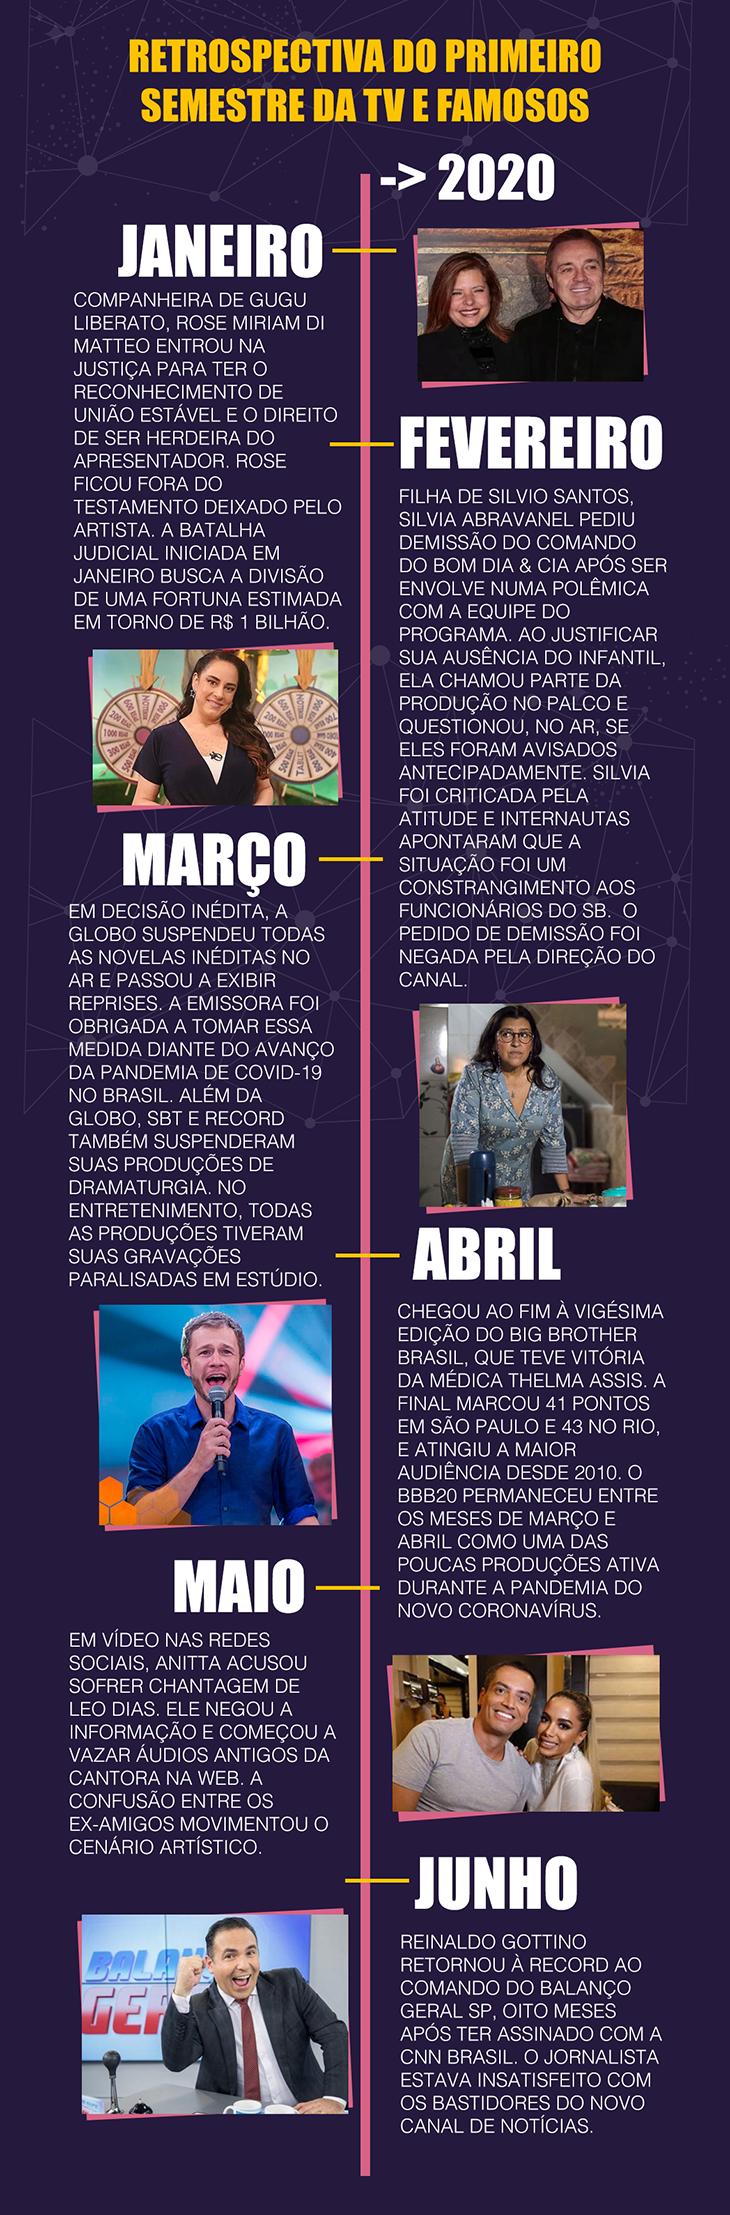 De decisão inédita na Globo a treta de Anitta e Leo Dias: A retrospectiva do 1º semestre de 2020